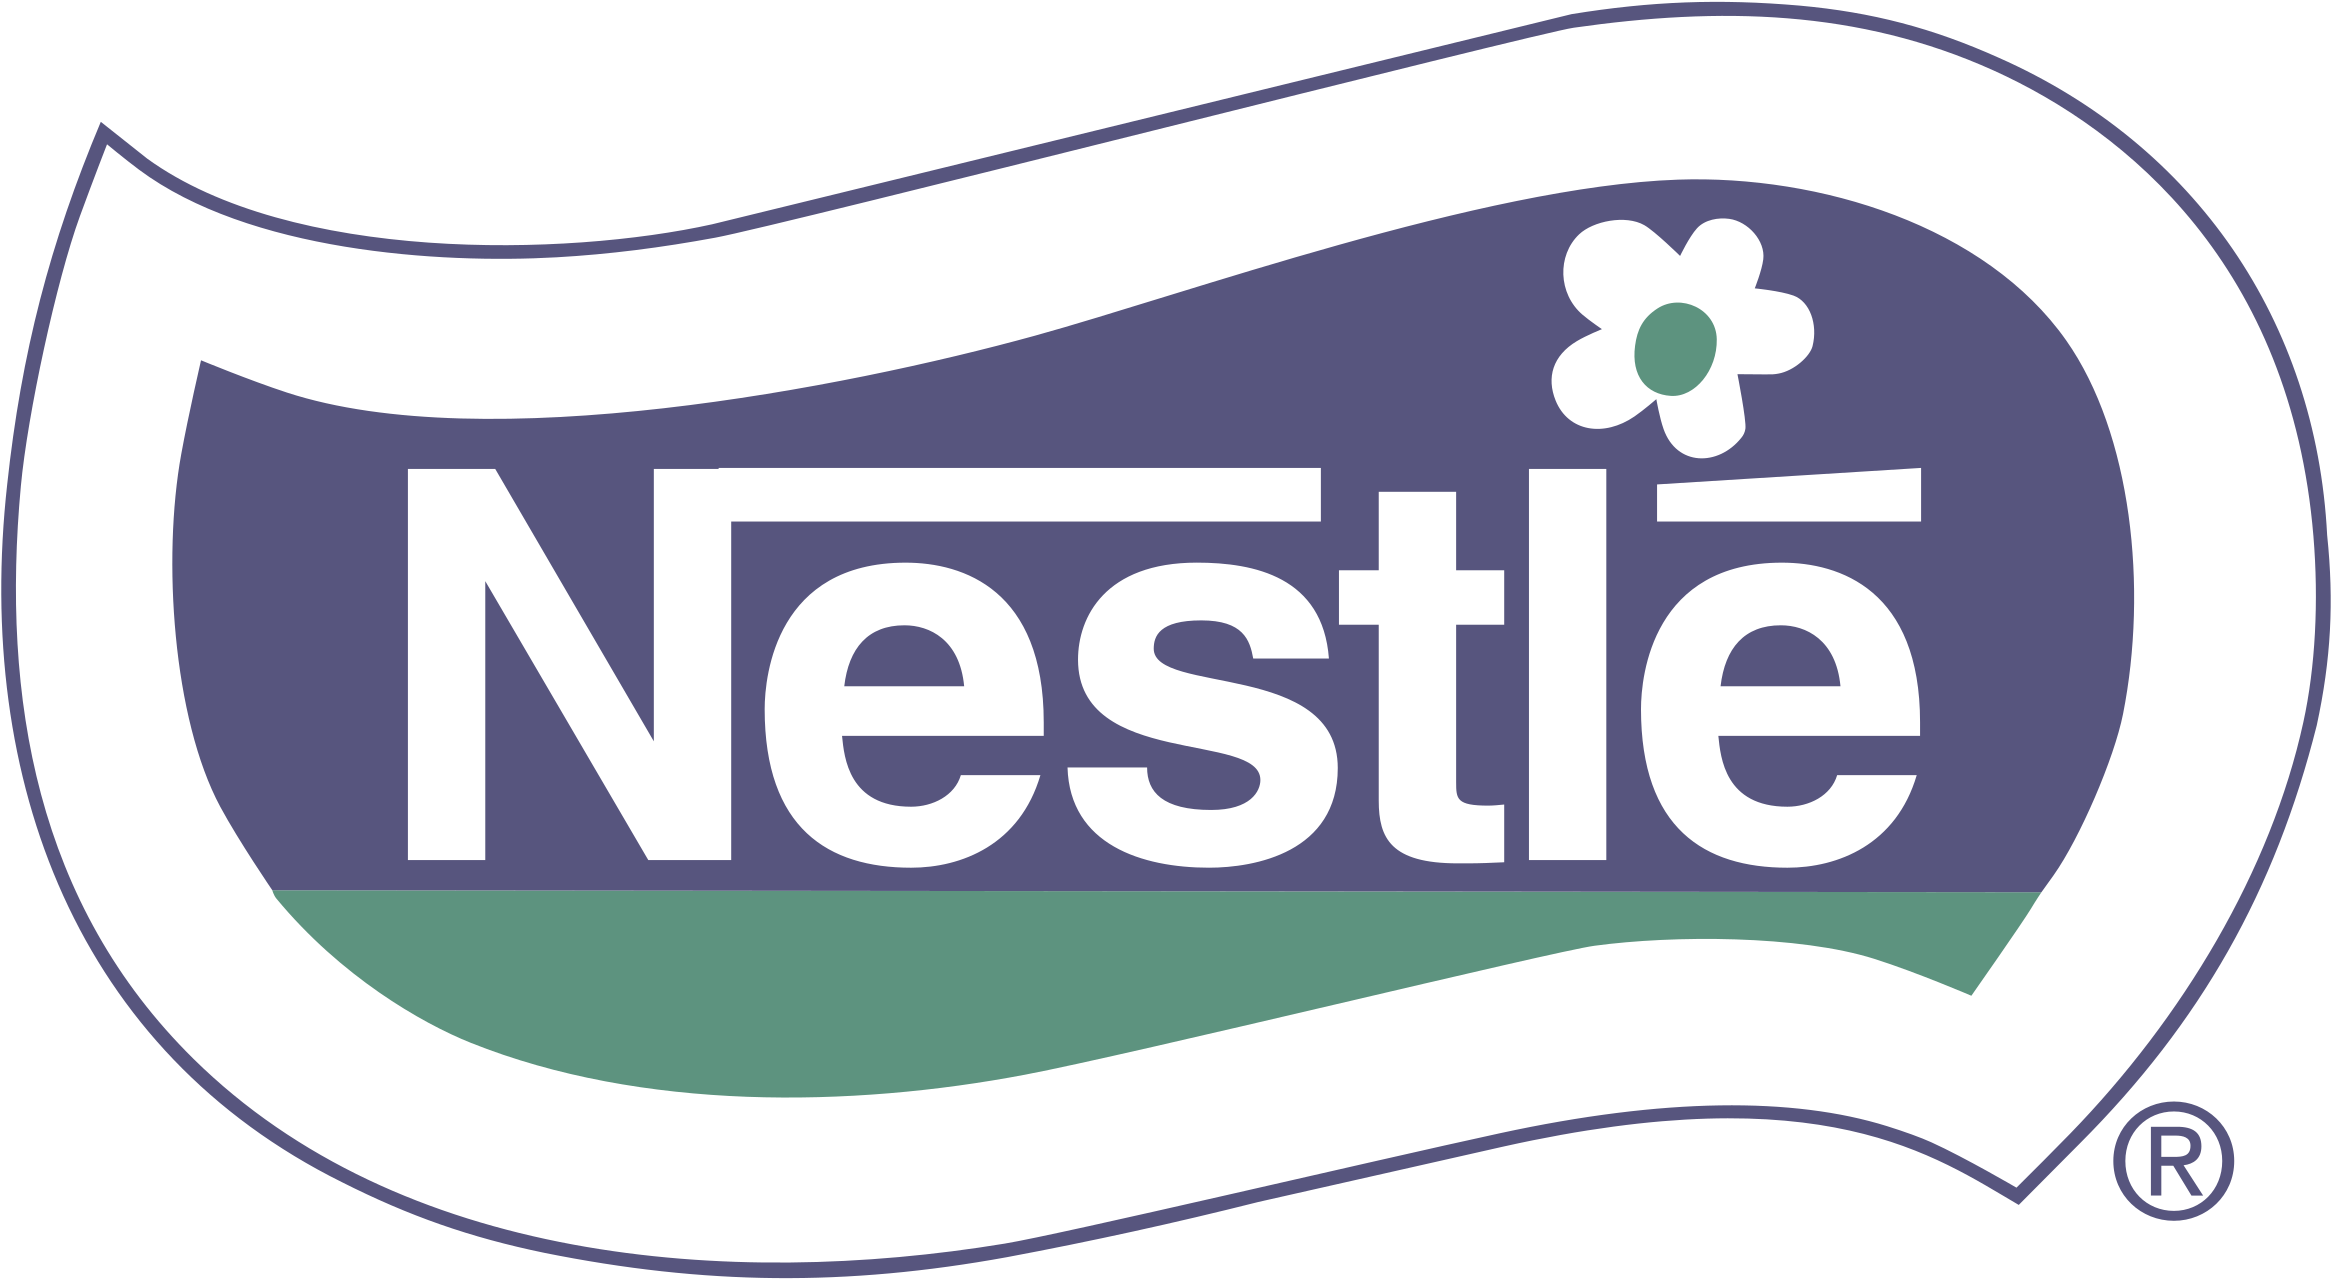 Nestlé Logo Transparent Images